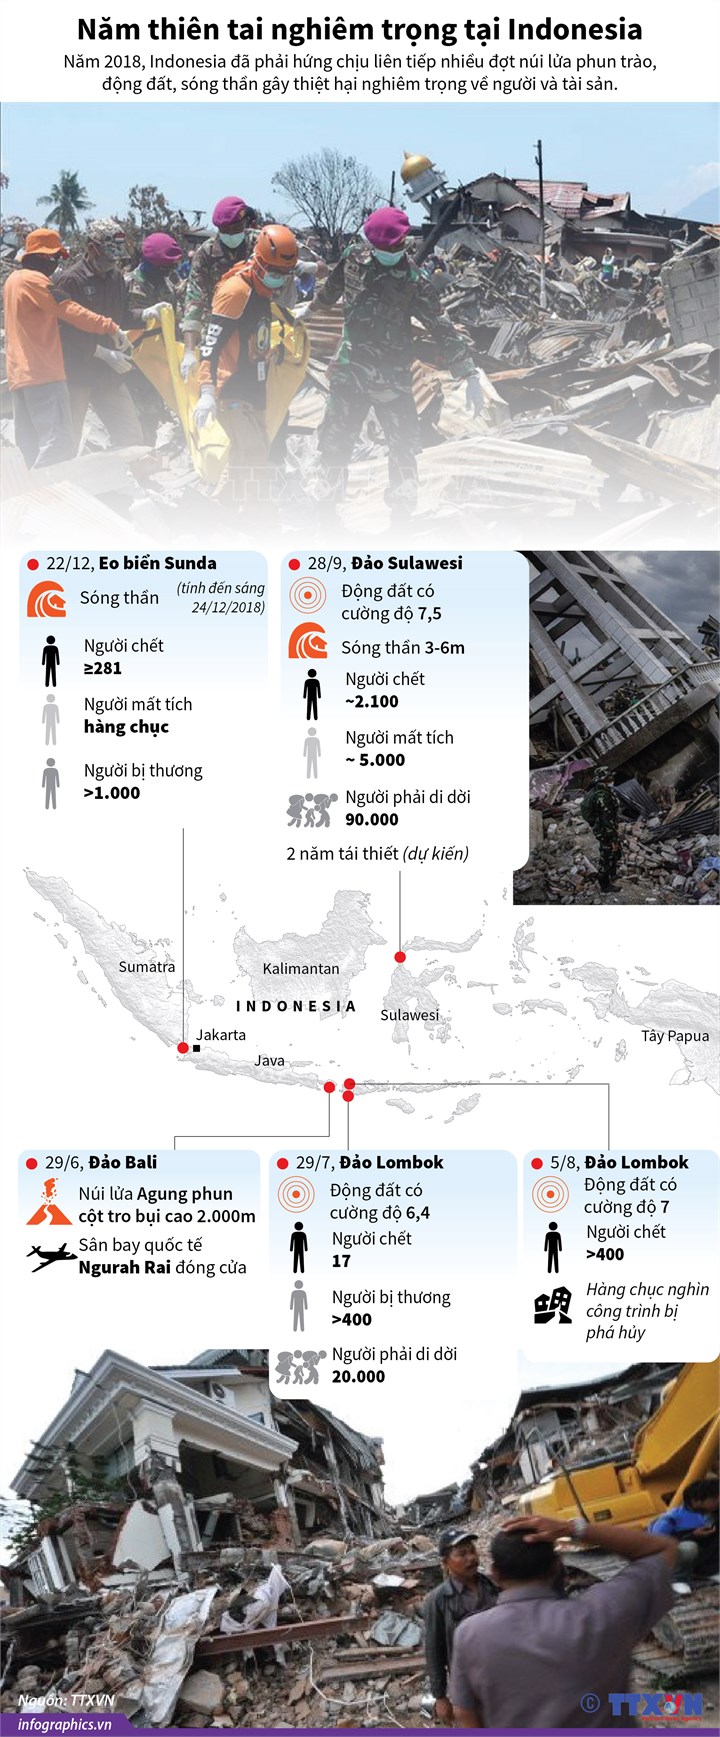 [Infographic] Năm thiên tai nghiêm trọng tại Indonesia - Ảnh 1